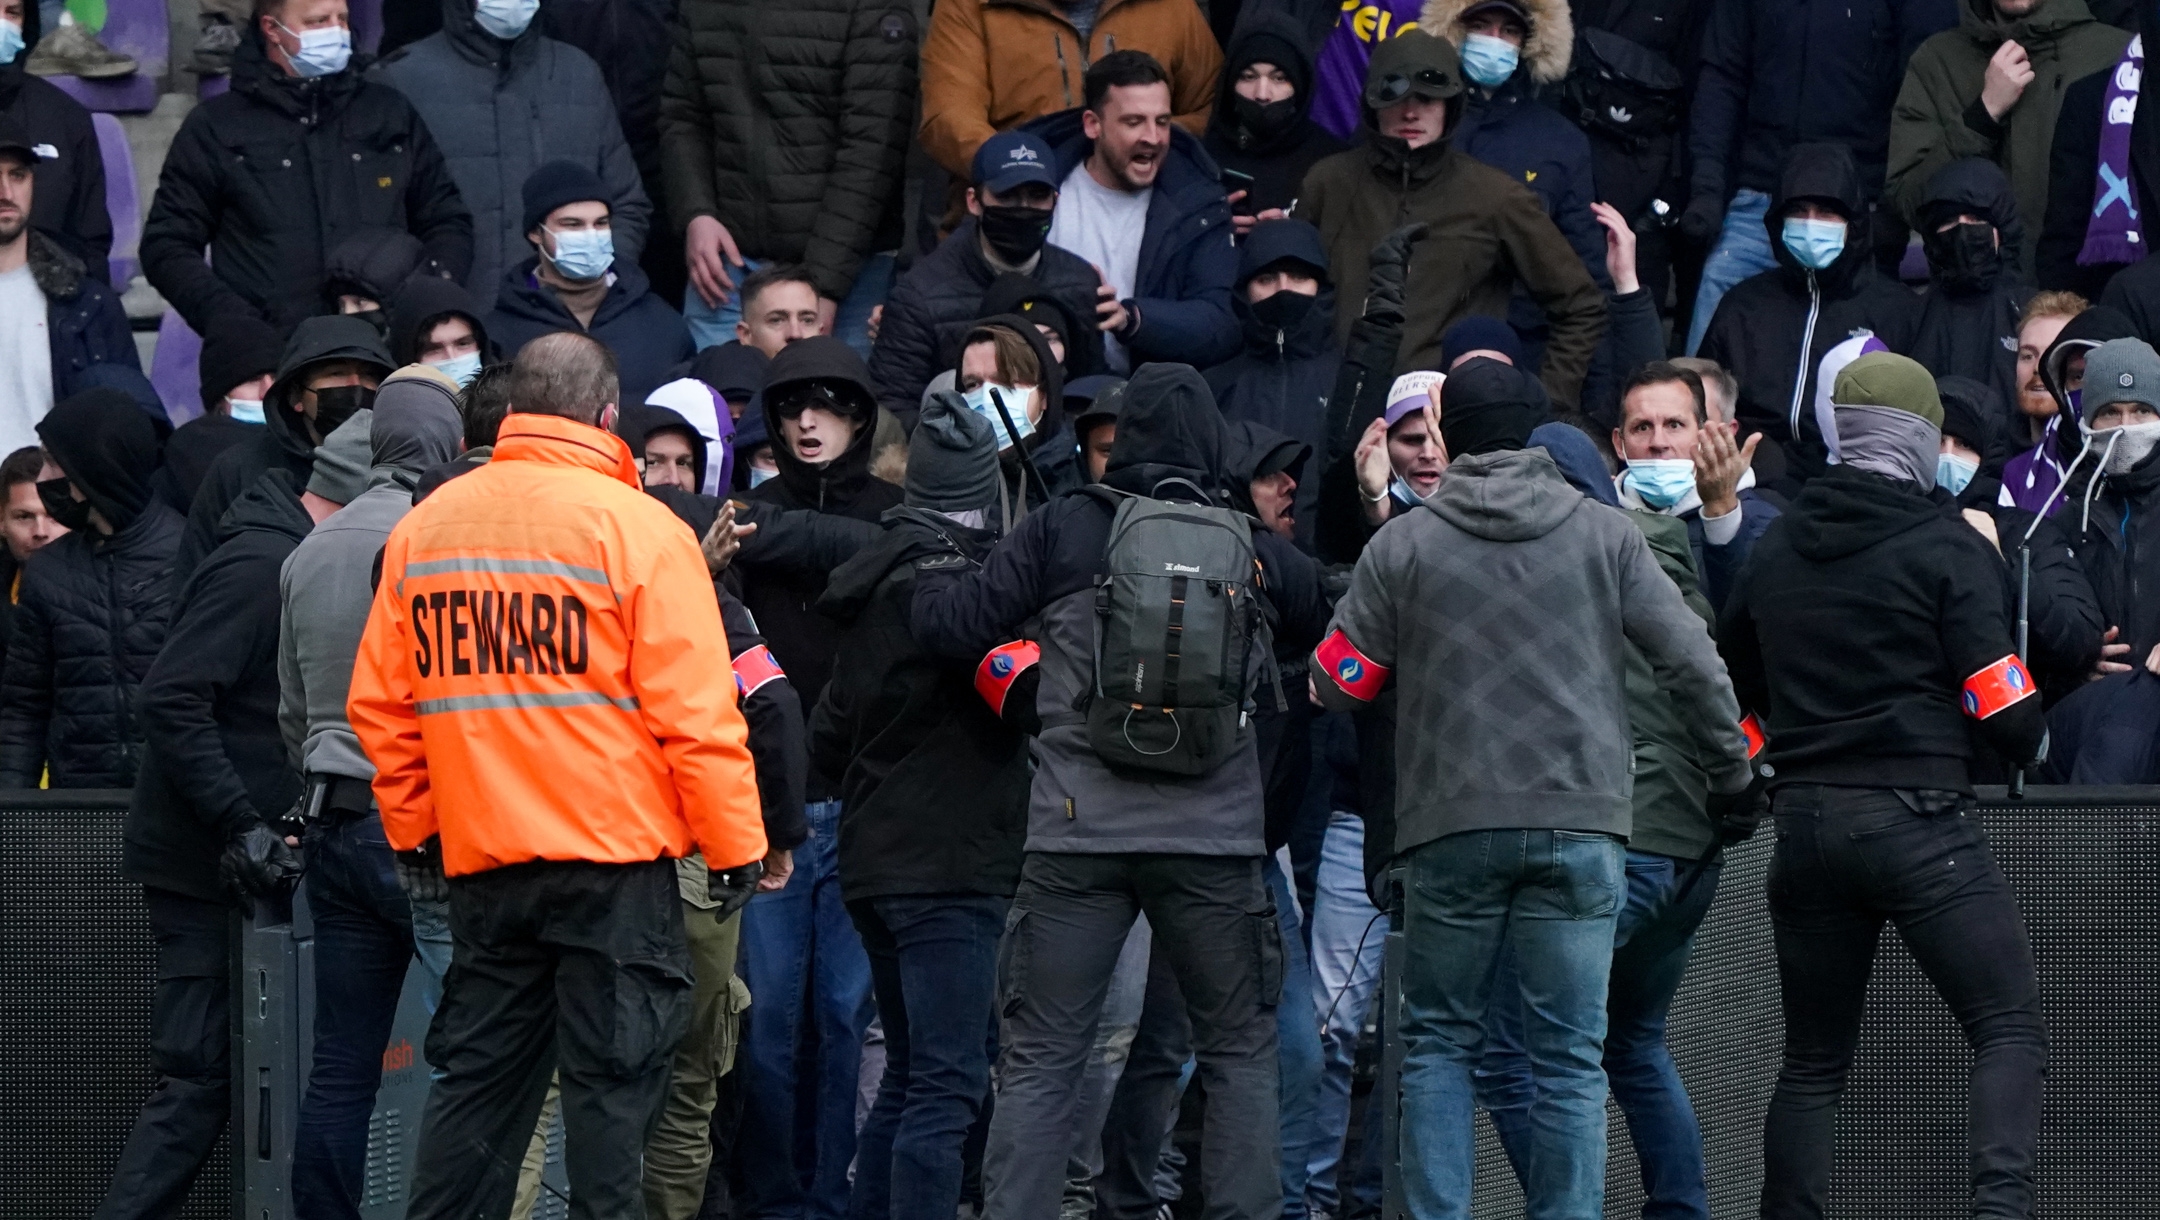 Voetbalfans nemen gezangen op over moord op joden in België